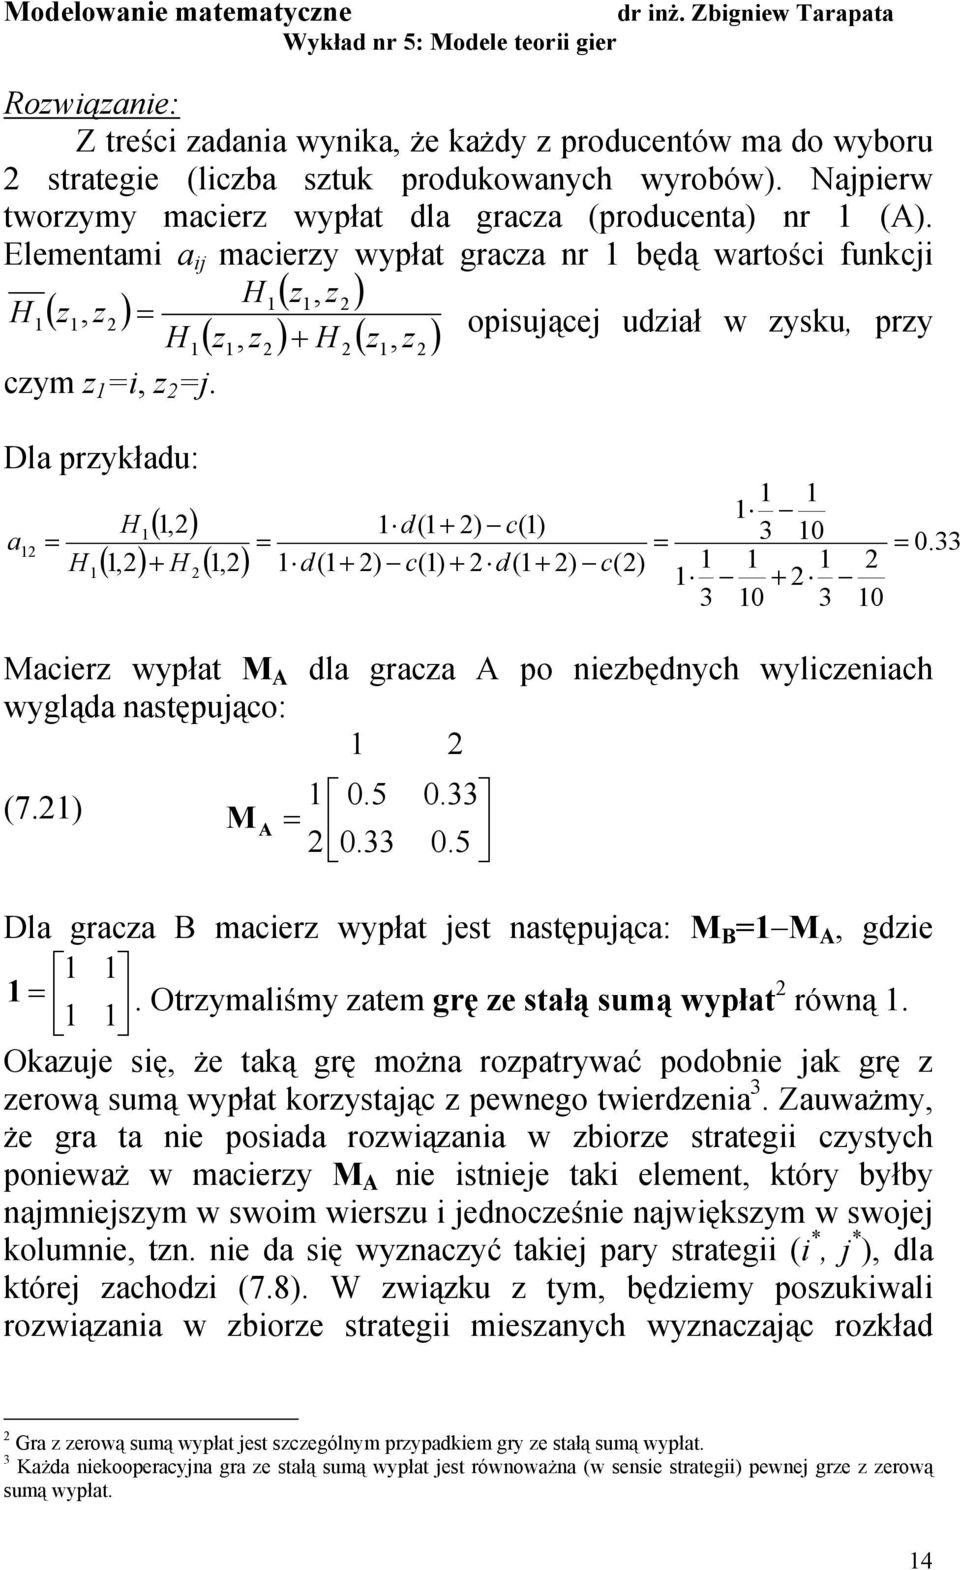 Dl przykłdu: H(, ) (, ) + H (, ) d( + ) c() 3 0 d( + ) c() + d( + ) c() + 3 0 3 0 H Mcerz wypłt M A dl grcz A po nezbędnych wylczench wygląd nstępująco: (7.) M A 0.5 0.33 0.